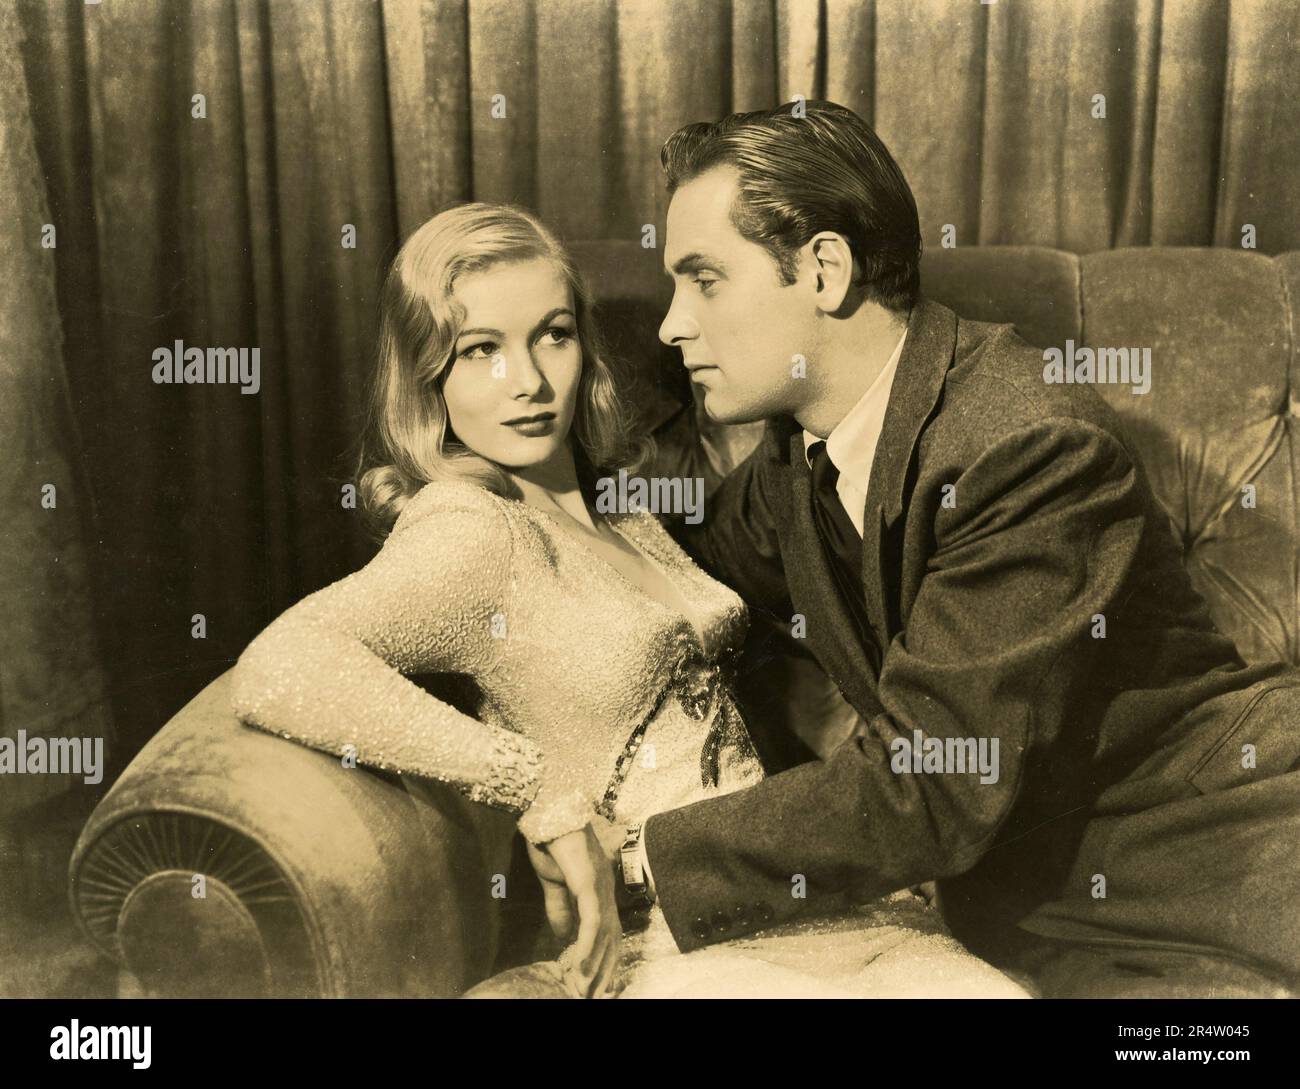 L'actrice américaine Veronica Lake et l'acteur William Holden dans le film I Wanted Wings, USA 1941 Banque D'Images